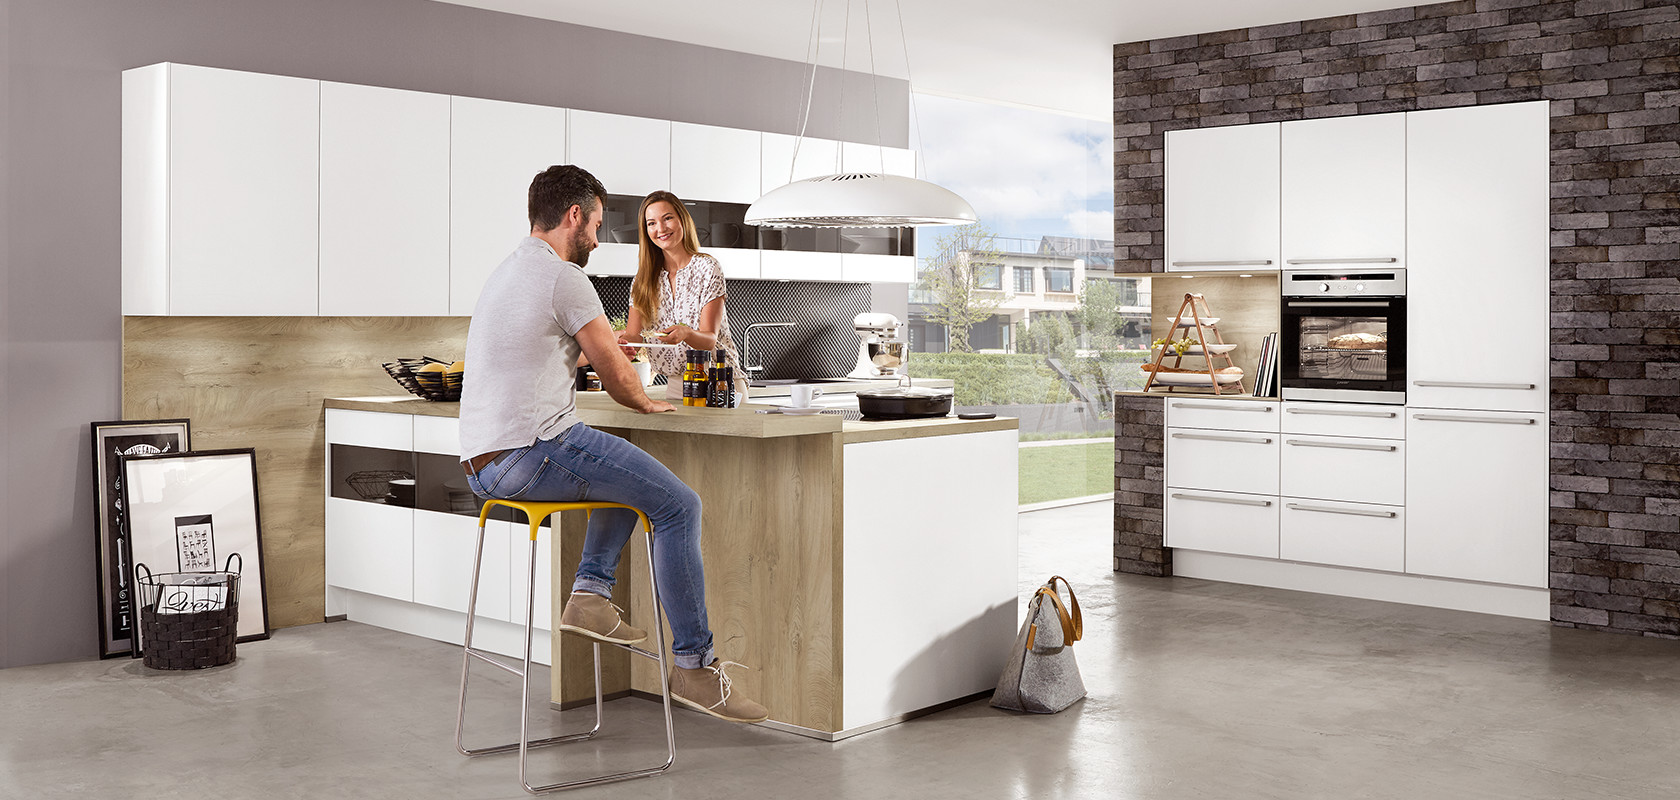 Un cadre de cuisine moderne avec un couple souriant en train de préparer un repas sur un îlot, mettant en avant des appareils élégants et une esthétique de design minimaliste.